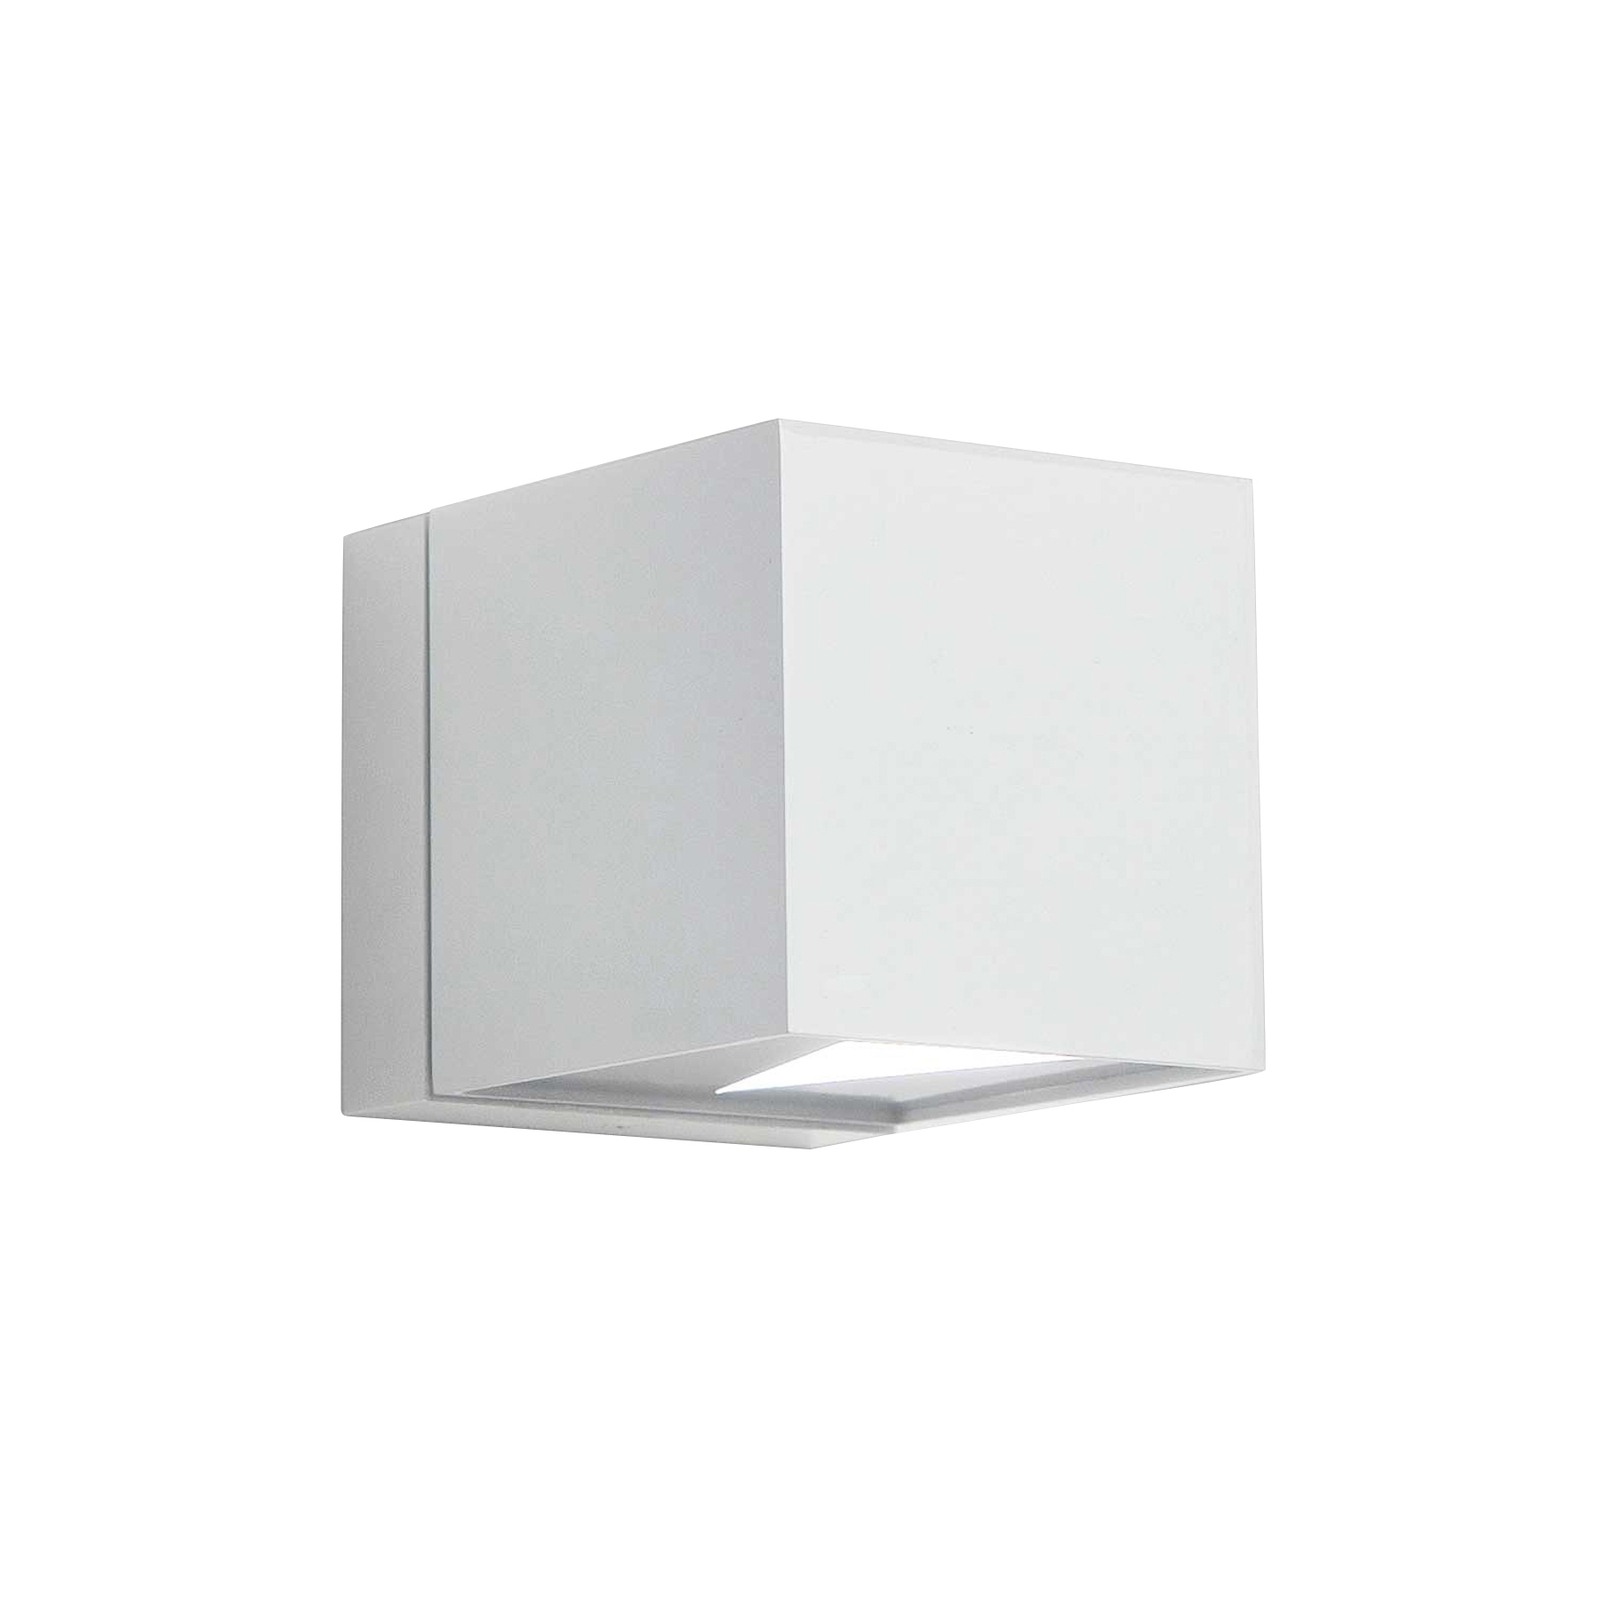 Dau cube wall light in aluminium